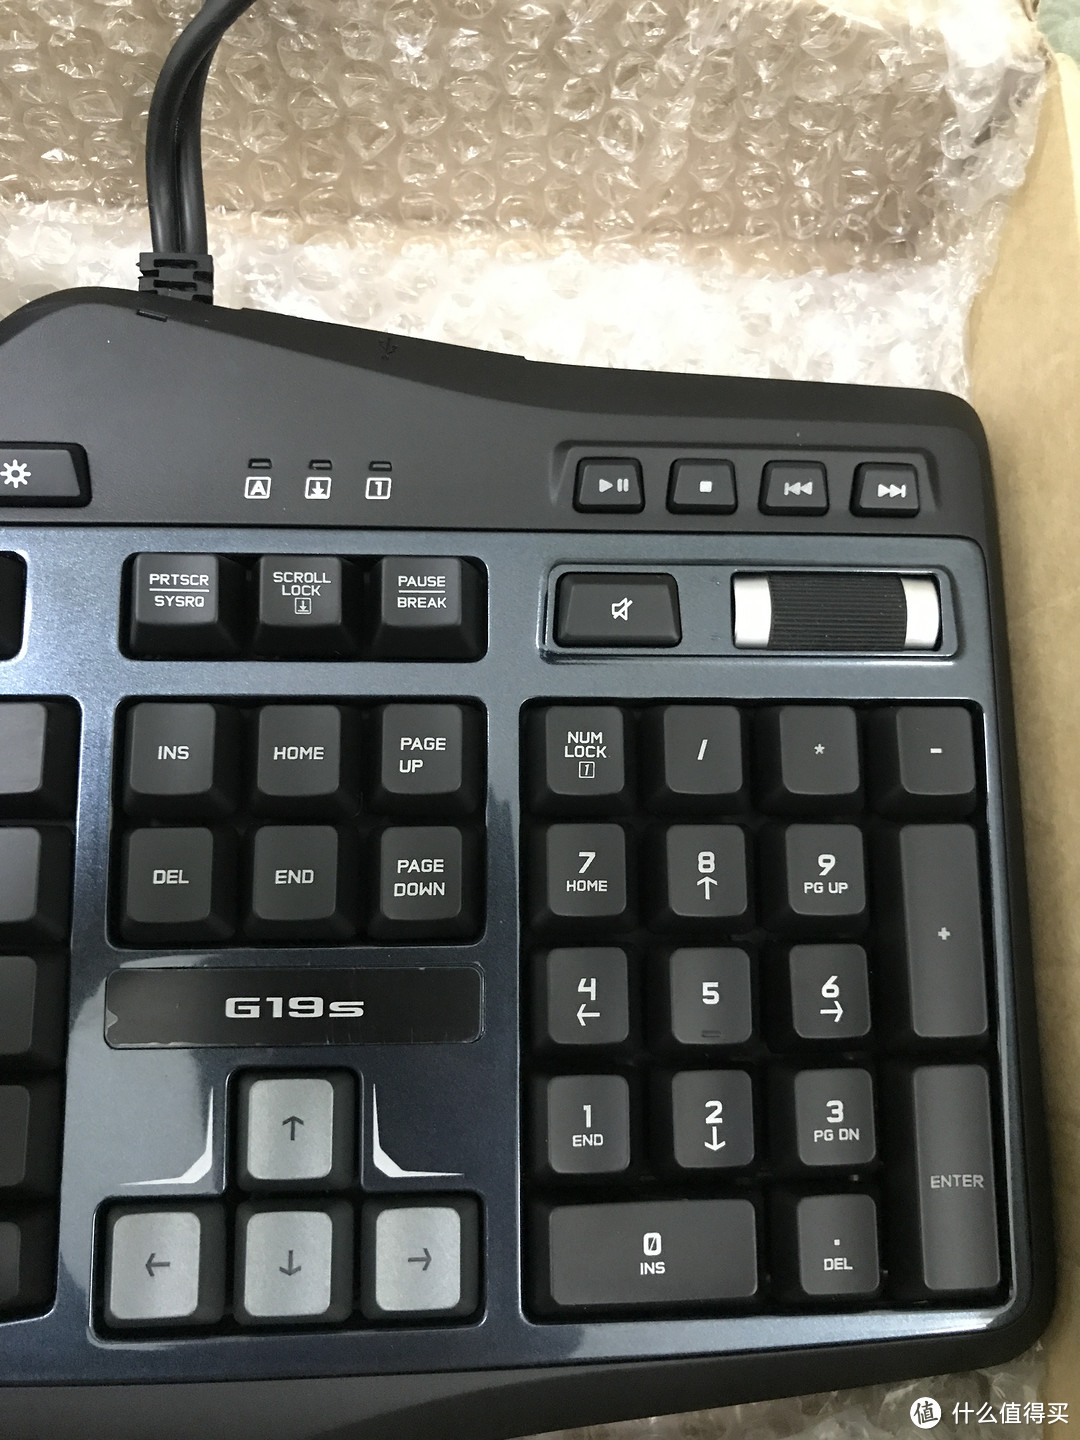 解开封印已久的 Logitech 罗技 G19s 考古系键盘 开箱